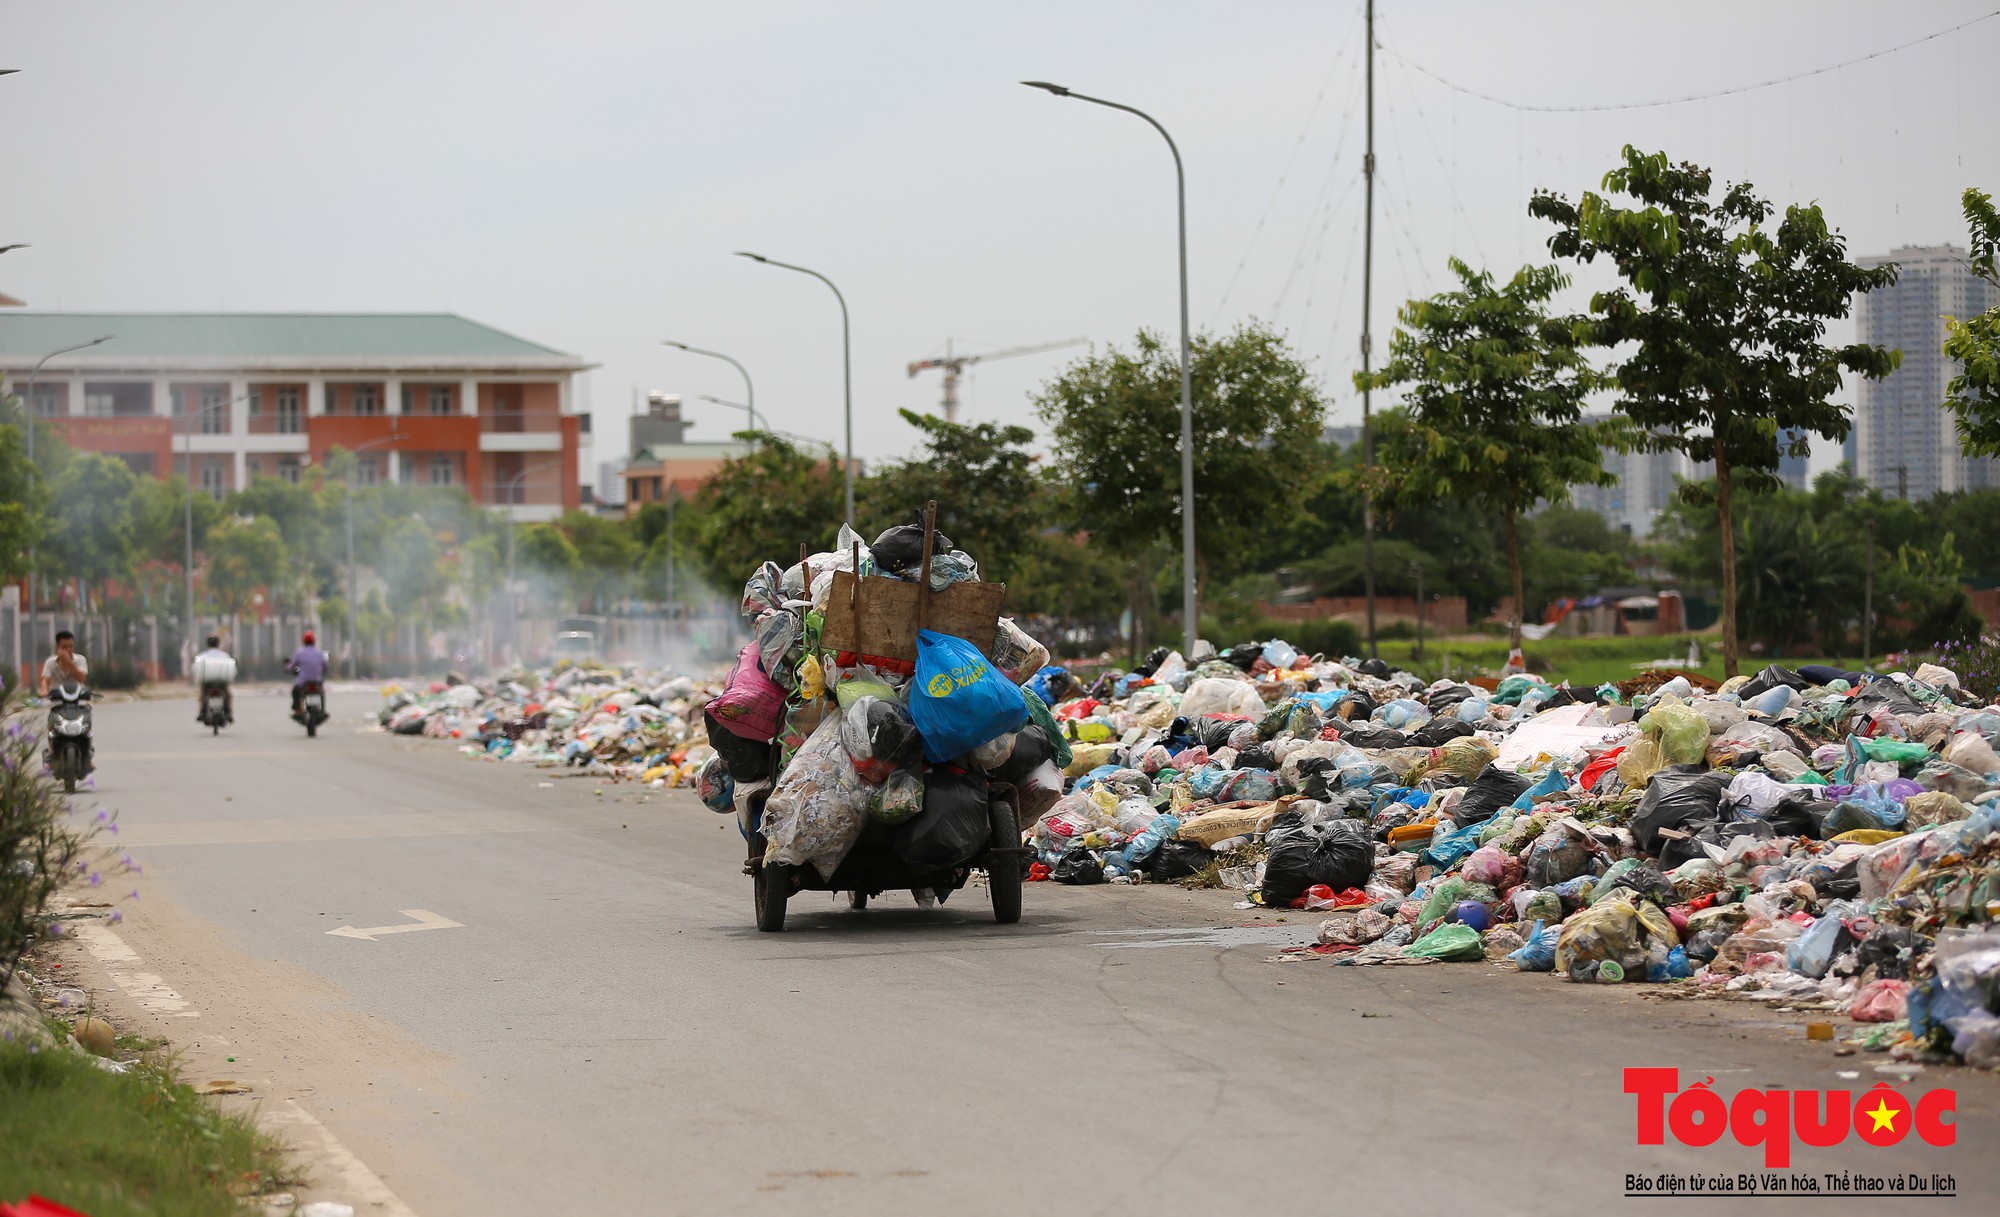 Hà Nội Ngỡ ngàng sau một đêm 4 chiếc ô tô chìm trong bãi rác (25)